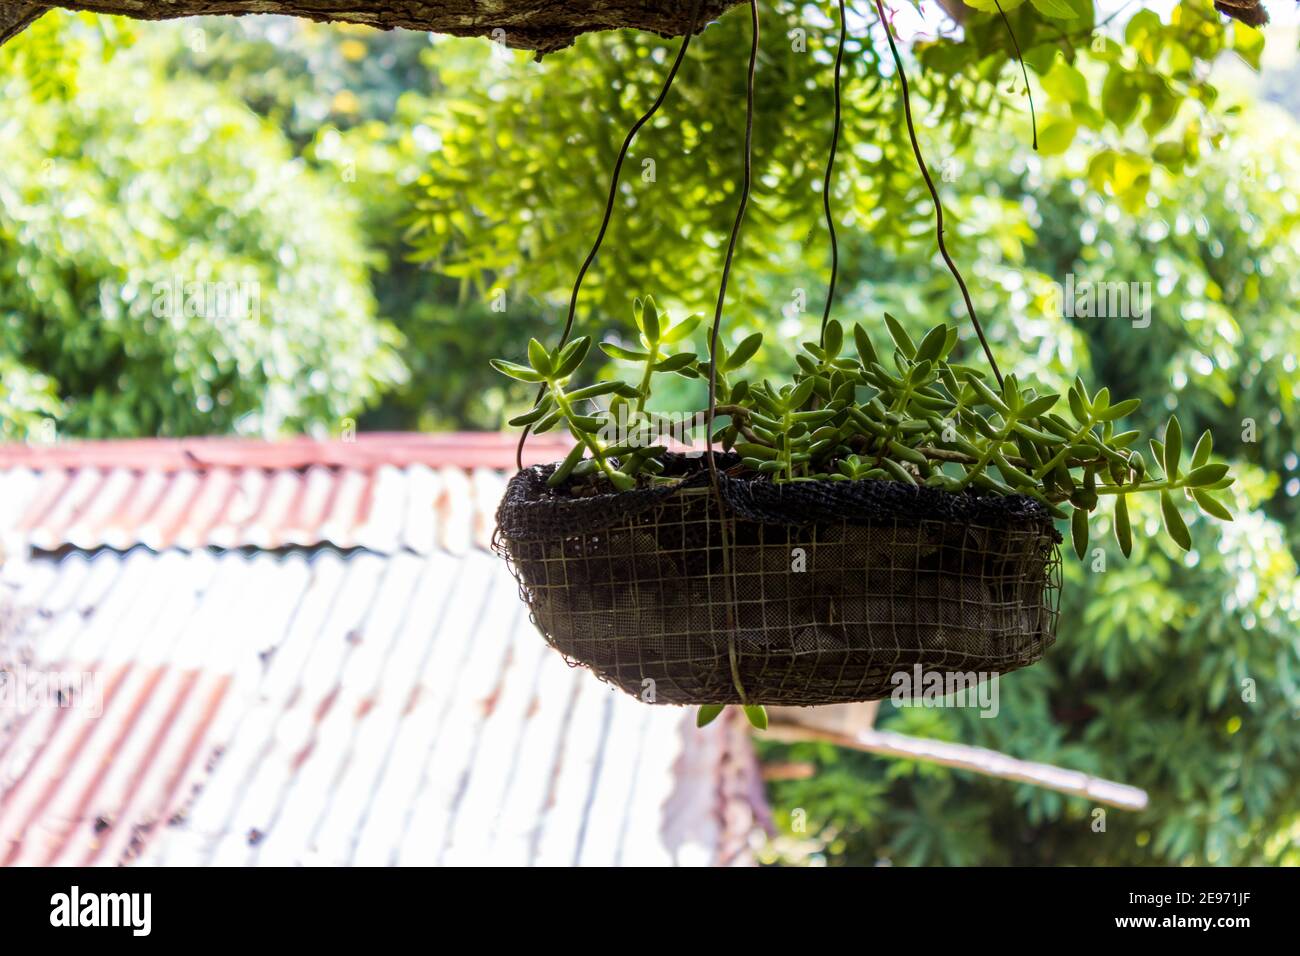 Un succulent, suspendu d'une branche d'arbre, dans un panier rustique suspendu dans la République dominicaine tropicale. Banque D'Images